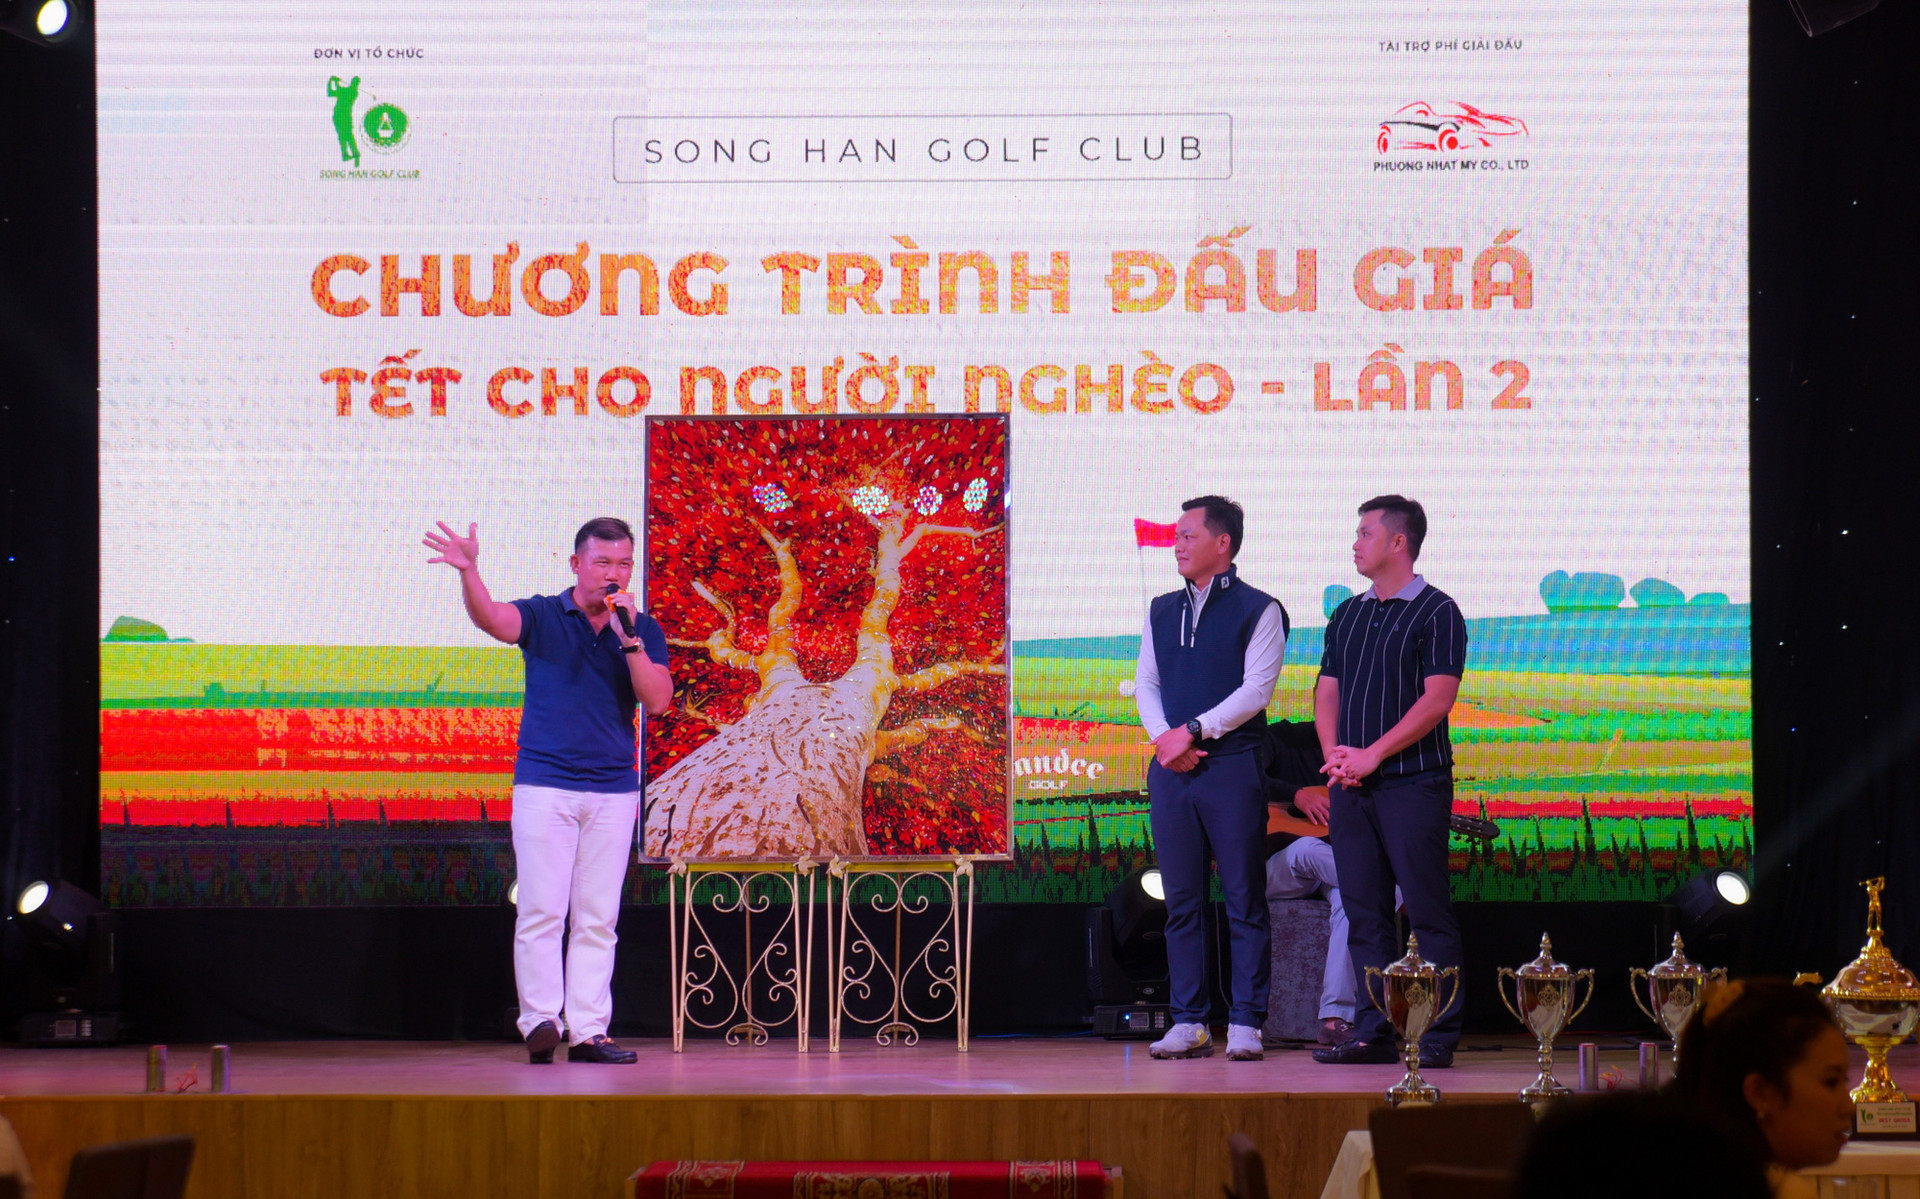 Hơn 1 tỷ đồng tiền từ thiện từ giải Sông Hàn Golf Club – Tết cho người nghèo lần 2 - Ảnh 3.